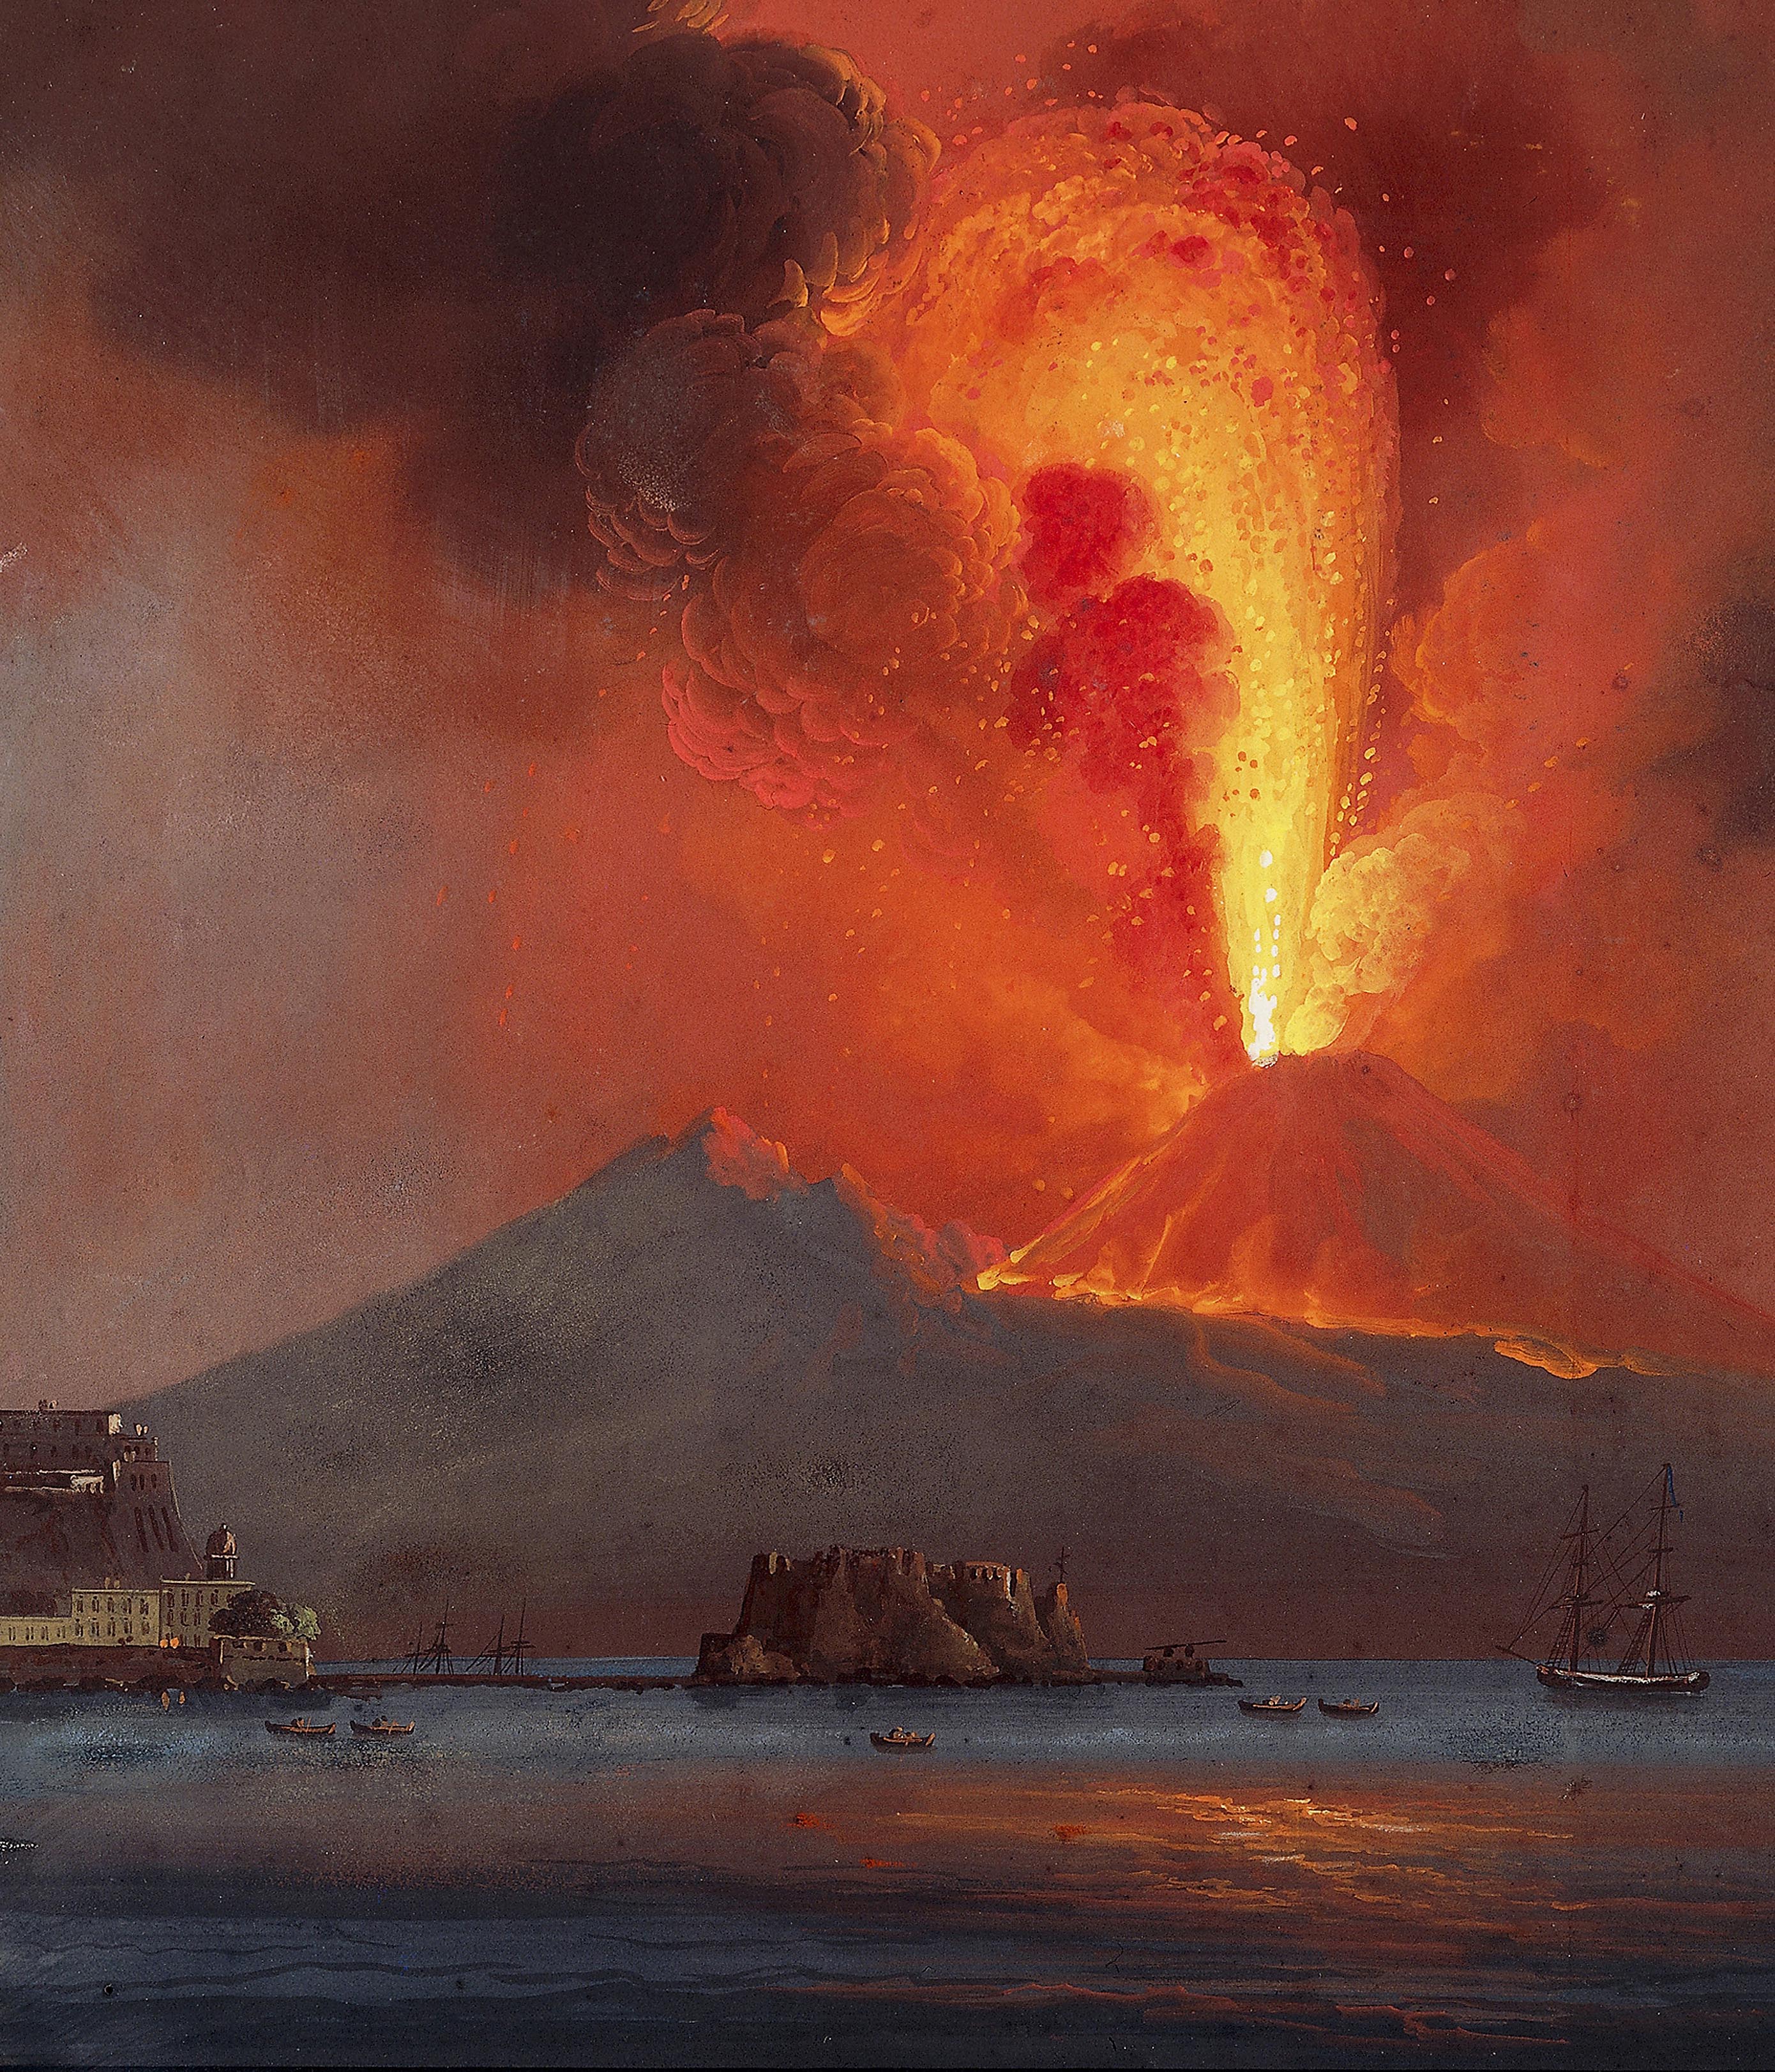 Извержение вулкана уничтожило город. Извержение вулкана Везувий гибель Помпеи. Извержение Везувия гибель Помпеи. Картина извержение вулкана Везувий гибель Помпеи.